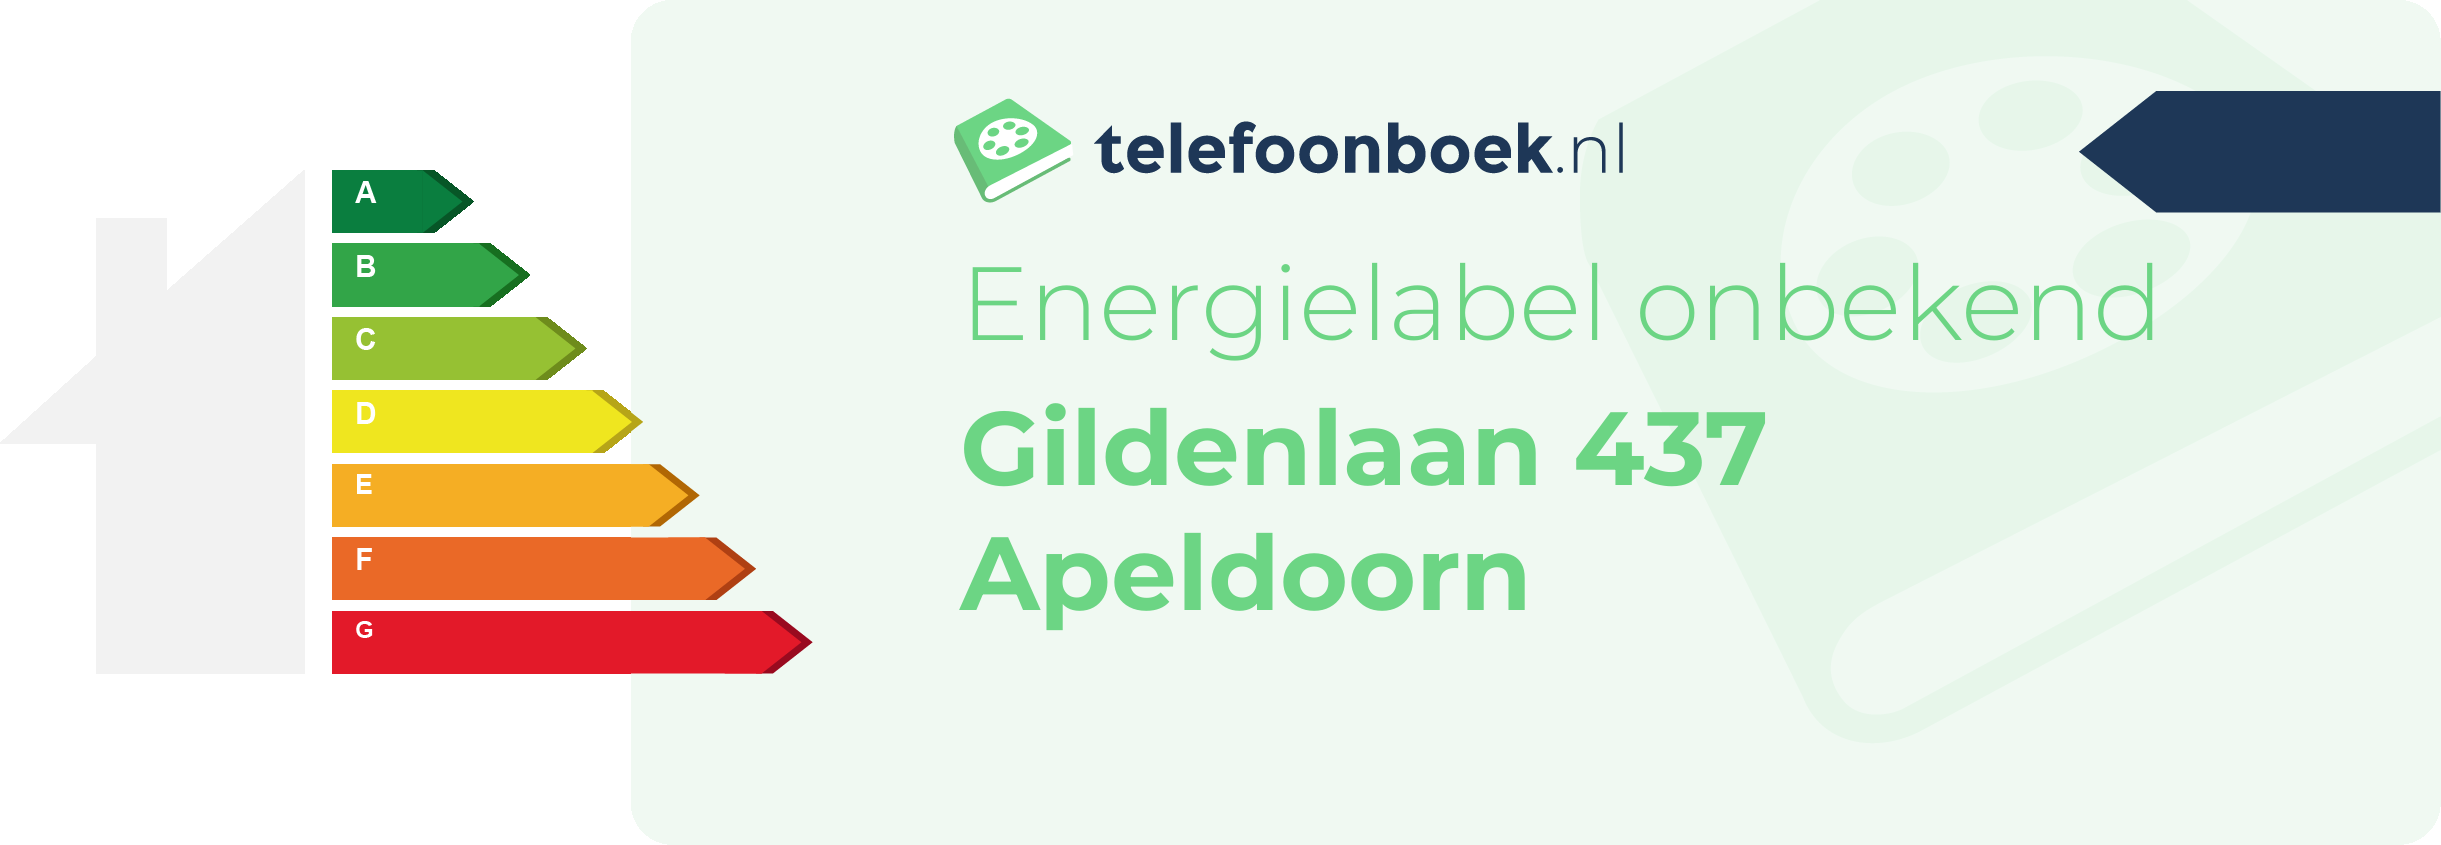 Energielabel Gildenlaan 437 Apeldoorn